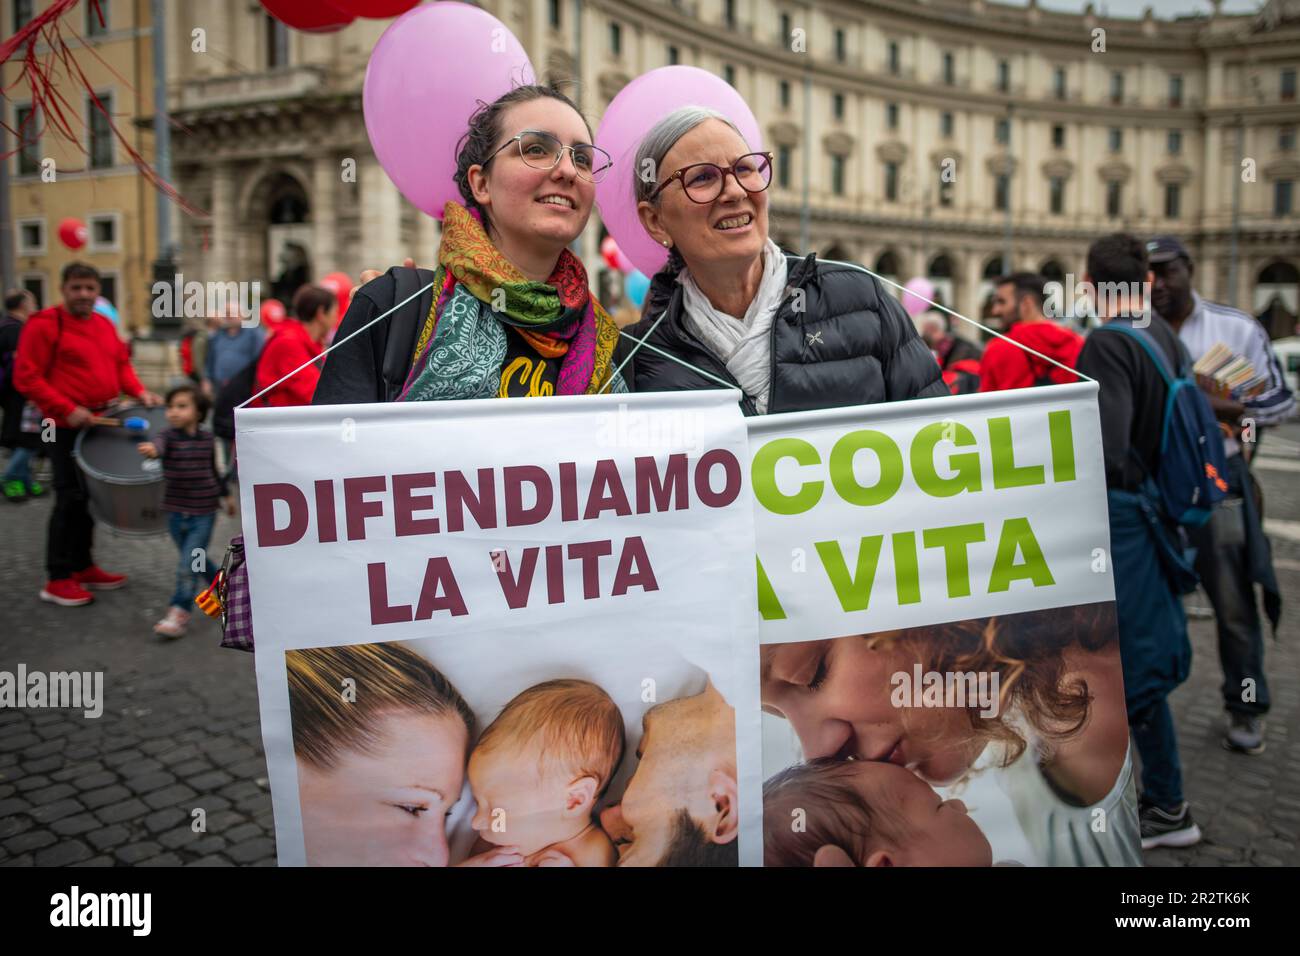 Eine junge Frau und ihre Mutter halten während einer Demonstration gegen Abtreibung Schilder mit dem Titel "Leben verteidigen" und "Leben akzeptieren". Eintausend Personen bei der Demonstration „Let's choose Life“, die von der Vereinigung „Pro Vita & Famiglia“ auf der Piazza della Repubblica in Rom organisiert wurde, um Nein zur Abtreibung und Ja zum Leben zu sagen. Es gab viele Priester, Nonnen, Familien und normale Bürger, die mehr als 120 Verbänden oder "Kirchen" angehörten, wie der "Sabaoth Church", einer protestantischen Kirche mit dem Ziel, eine Armee von Menschen zu bilden, deren Waffen Liebe und Gebete sind. Schilder und Slogans auf Italienisch, aber Englisch, Polnisch und Französisch wir Stockfoto